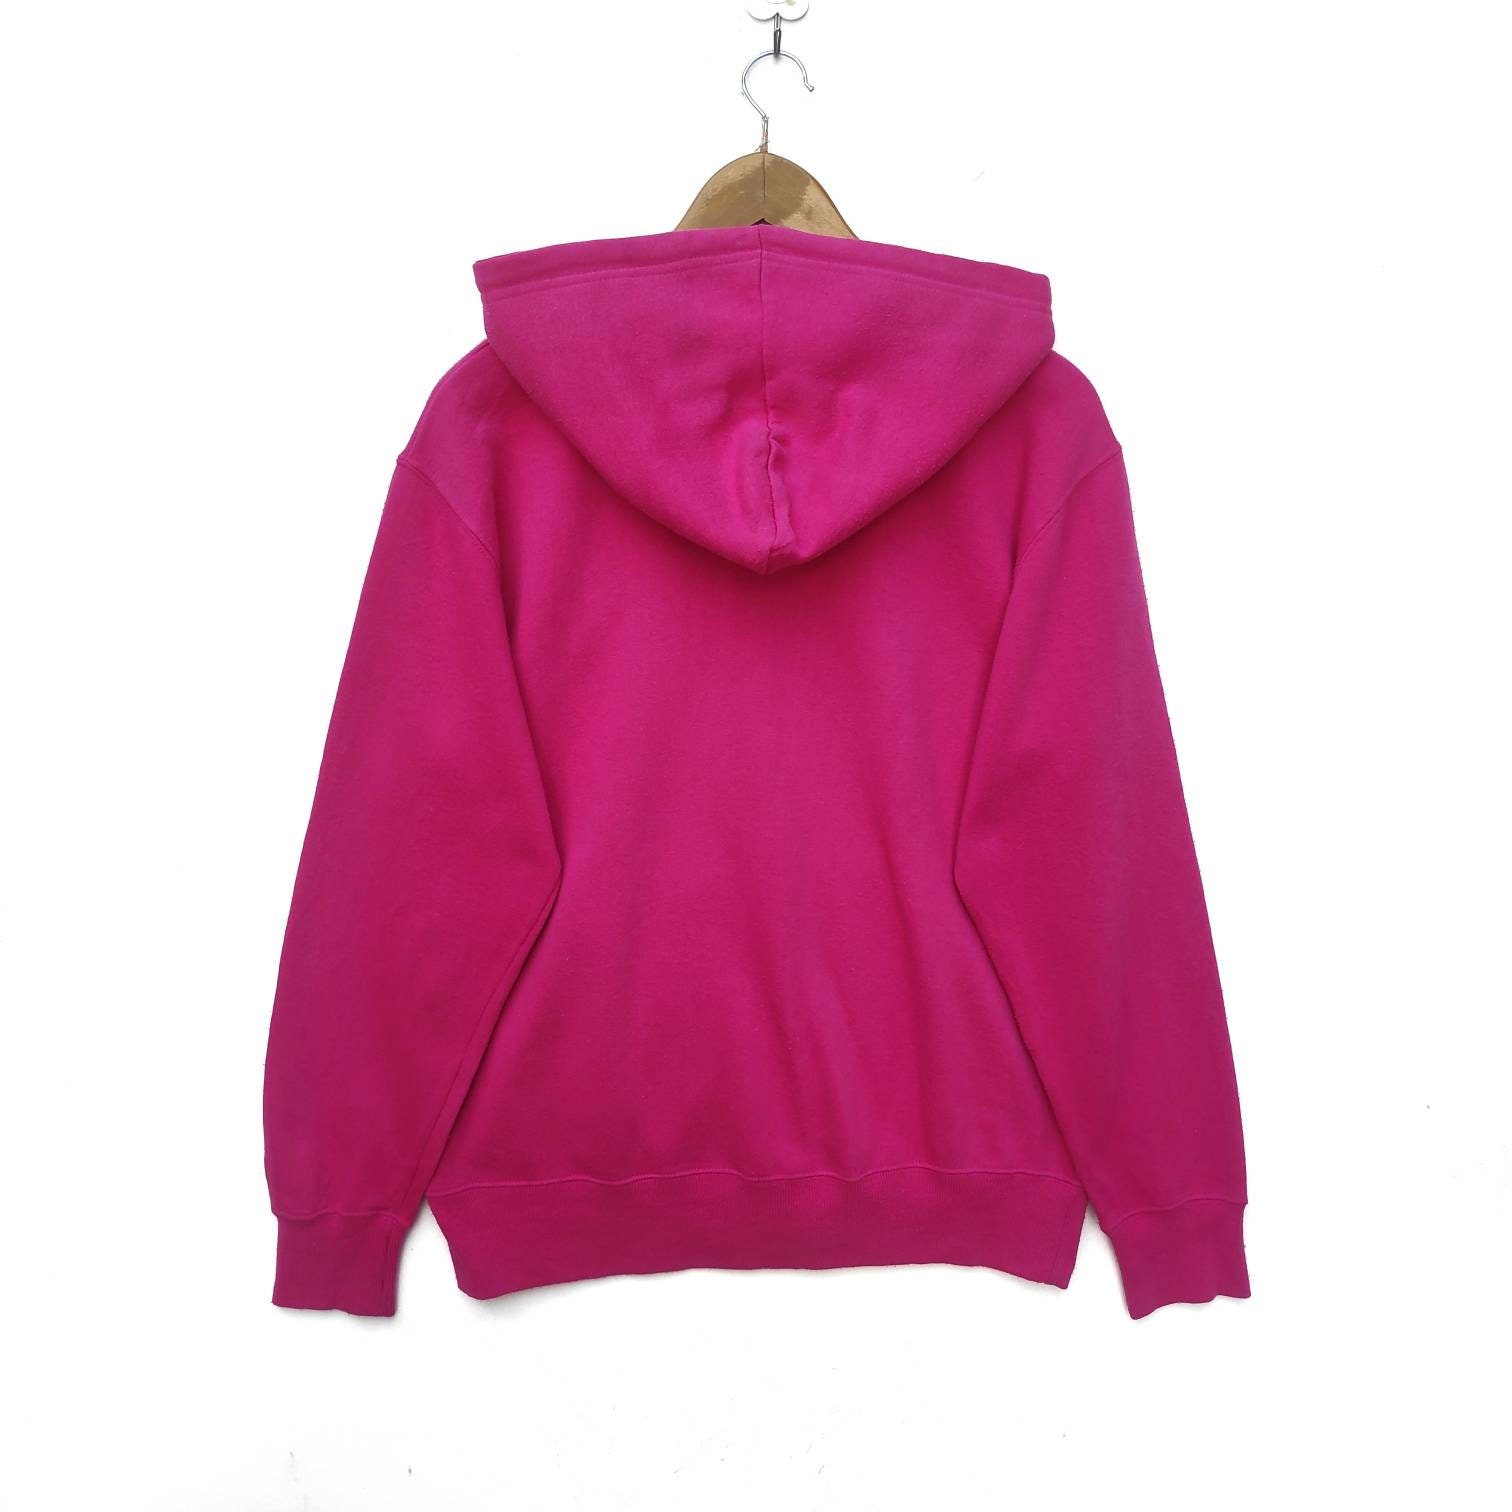 Plain Pink Hoodie Sweatshirt Sweater Pullover Long Sleeve - Etsy